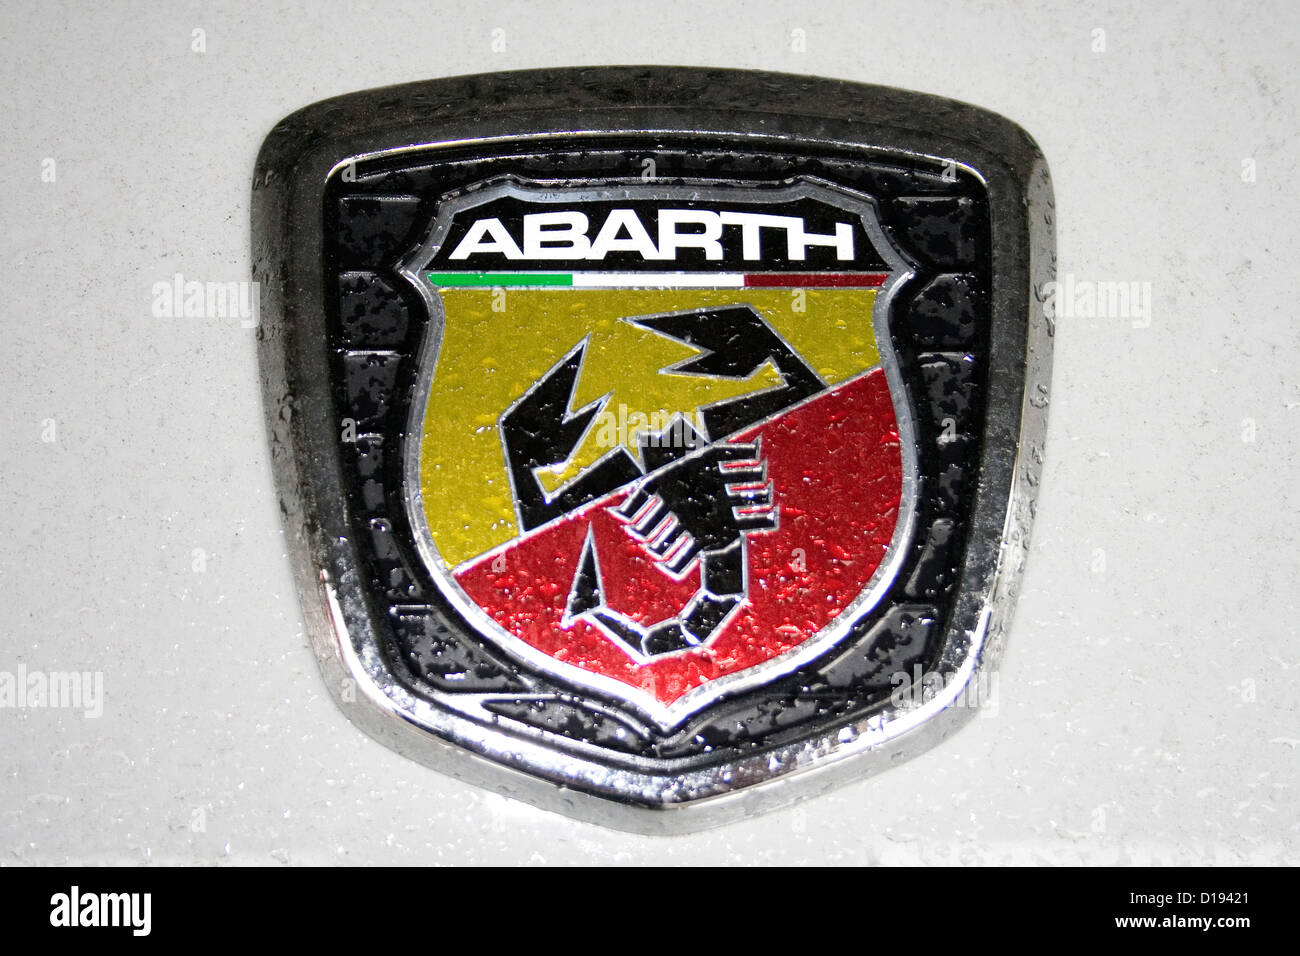 Un scorpion Abarth logo sur le capot d'une voiture Fiat. Banque D'Images